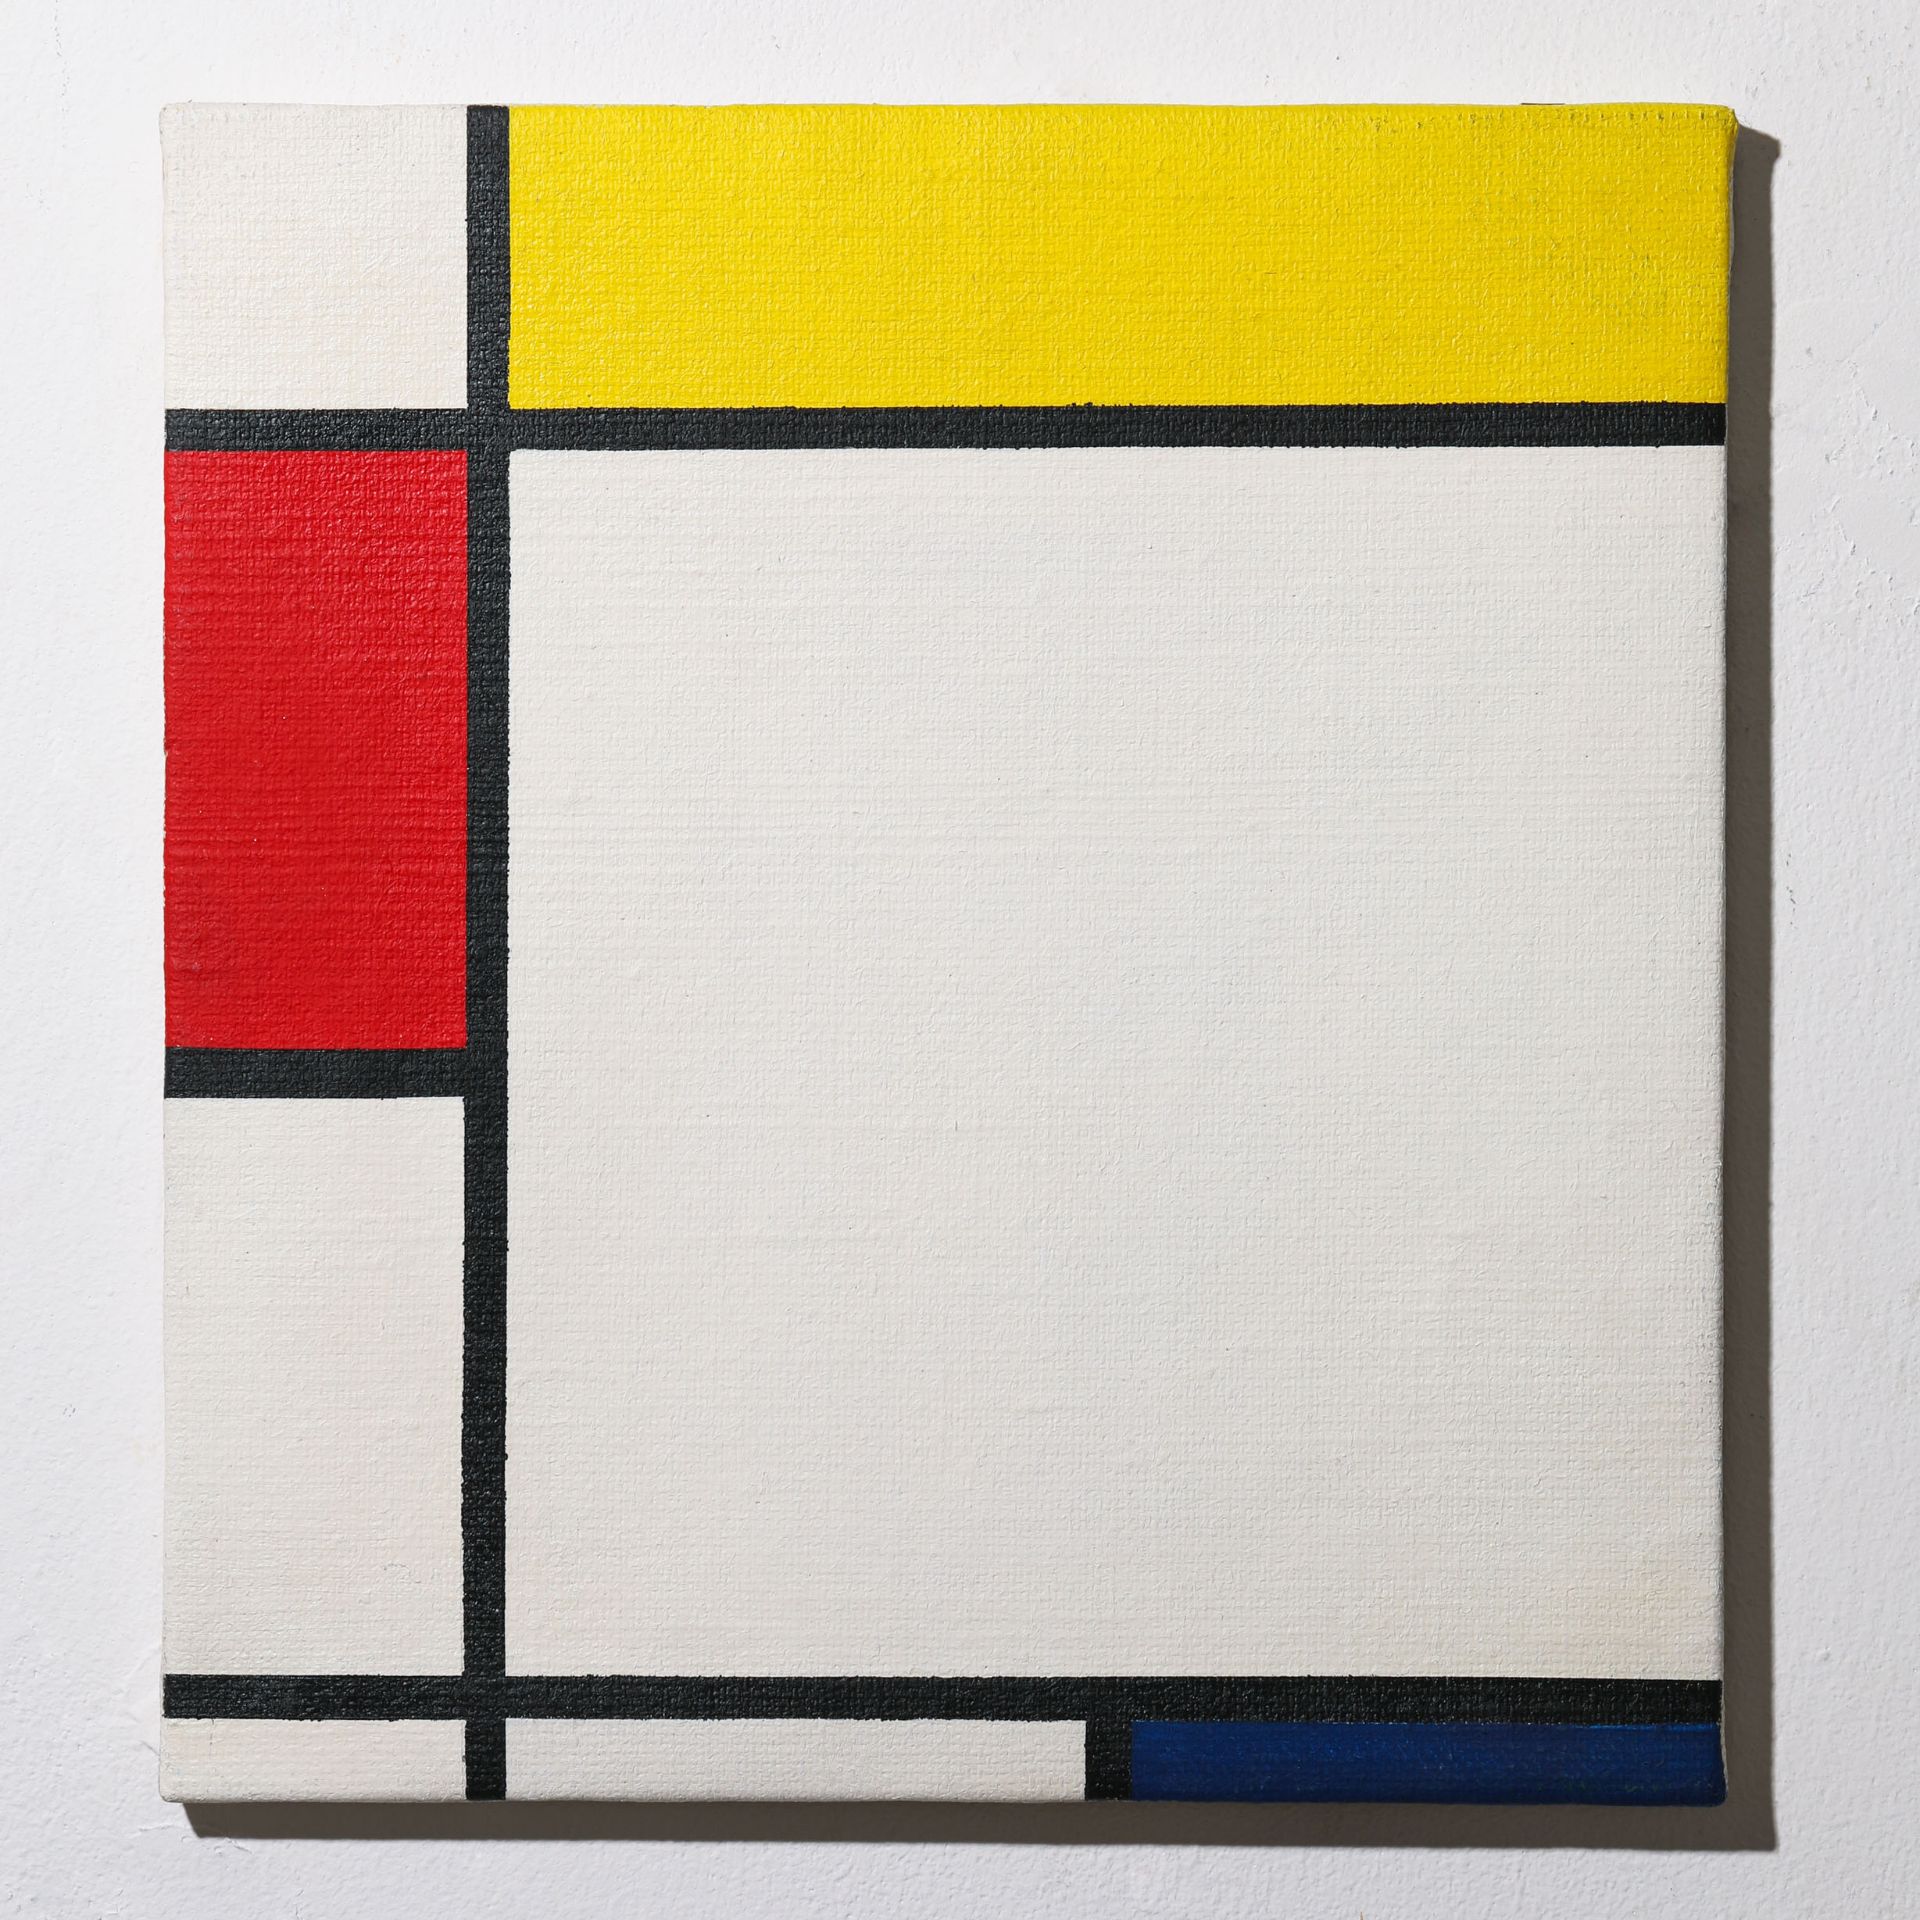 Andrea Branzi*, Studio Alchymia / Alchimia, Mondrian from the bau. haus art collection Edition 3/10 - Image 2 of 5